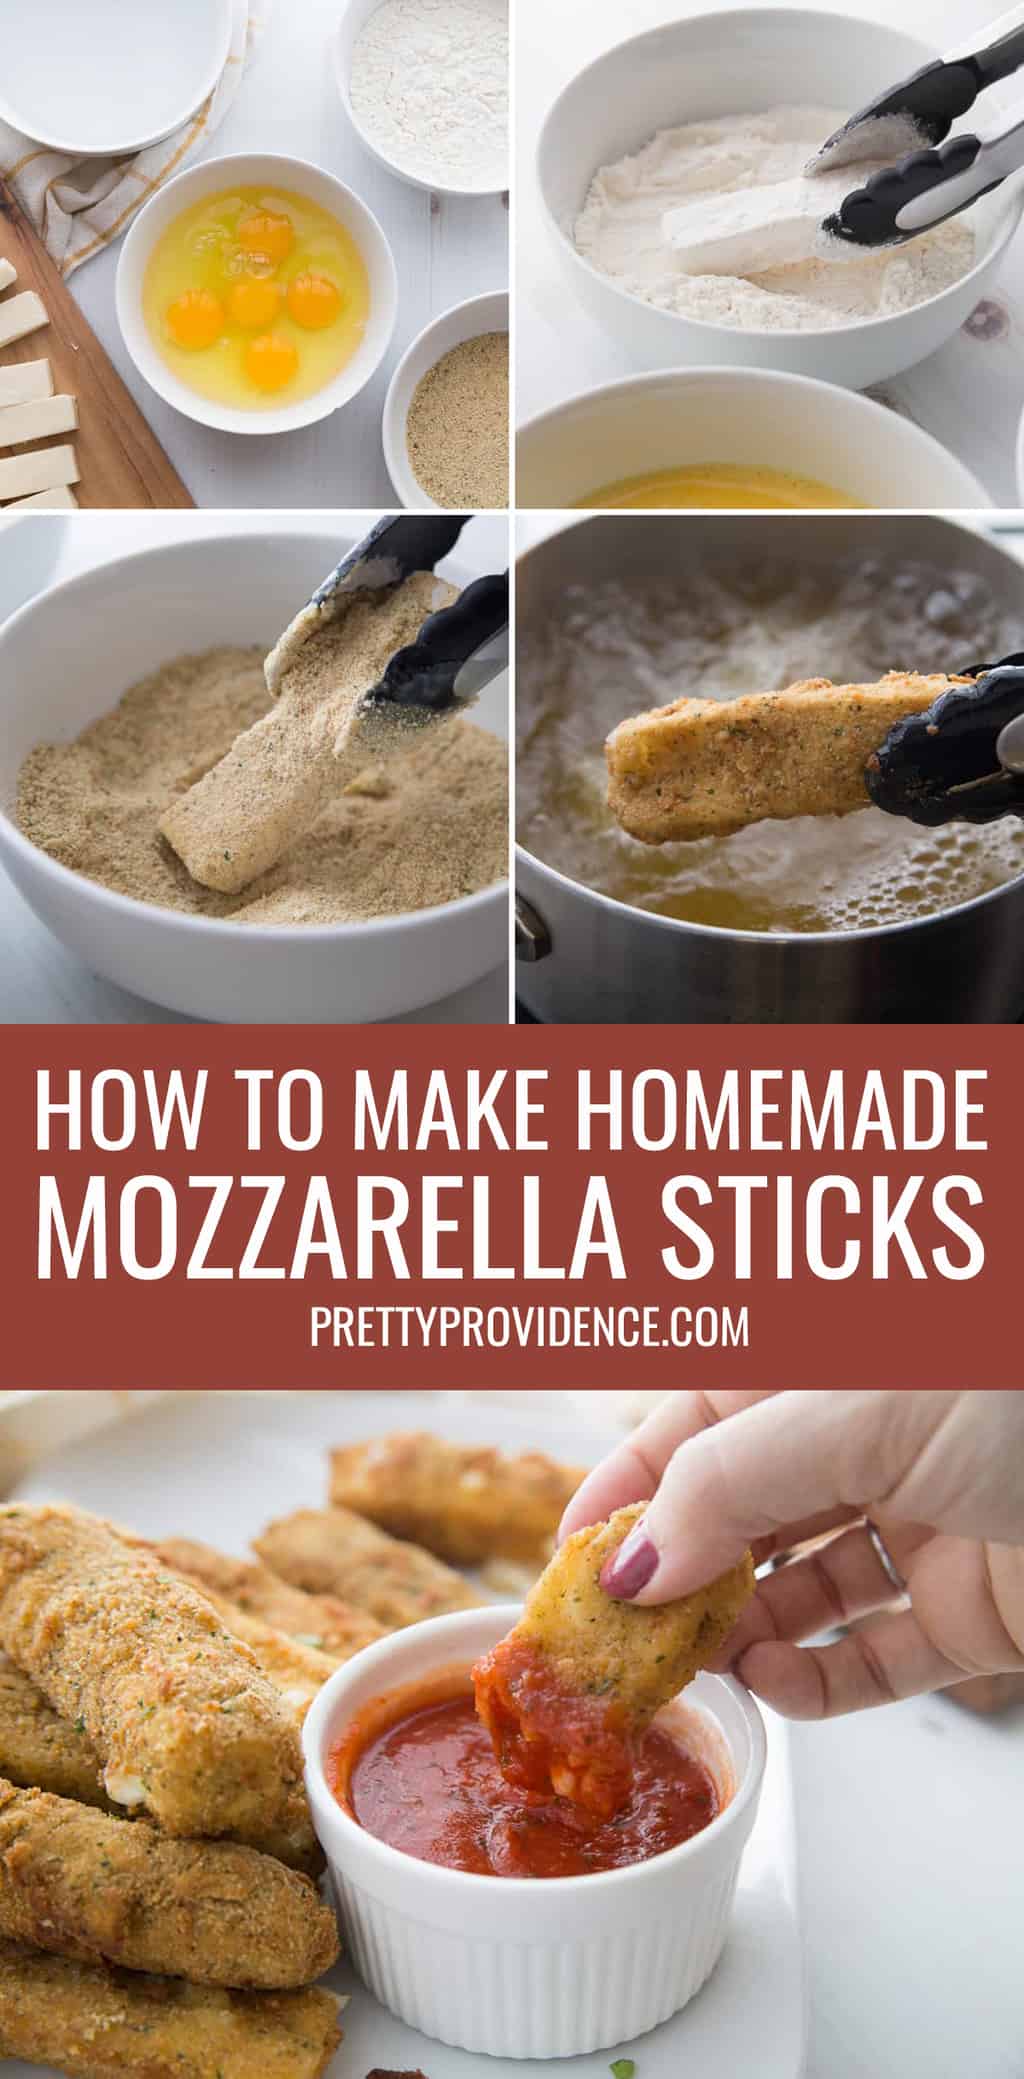 Homemade Mozzarella Sticks Recipe - Pretty Providence